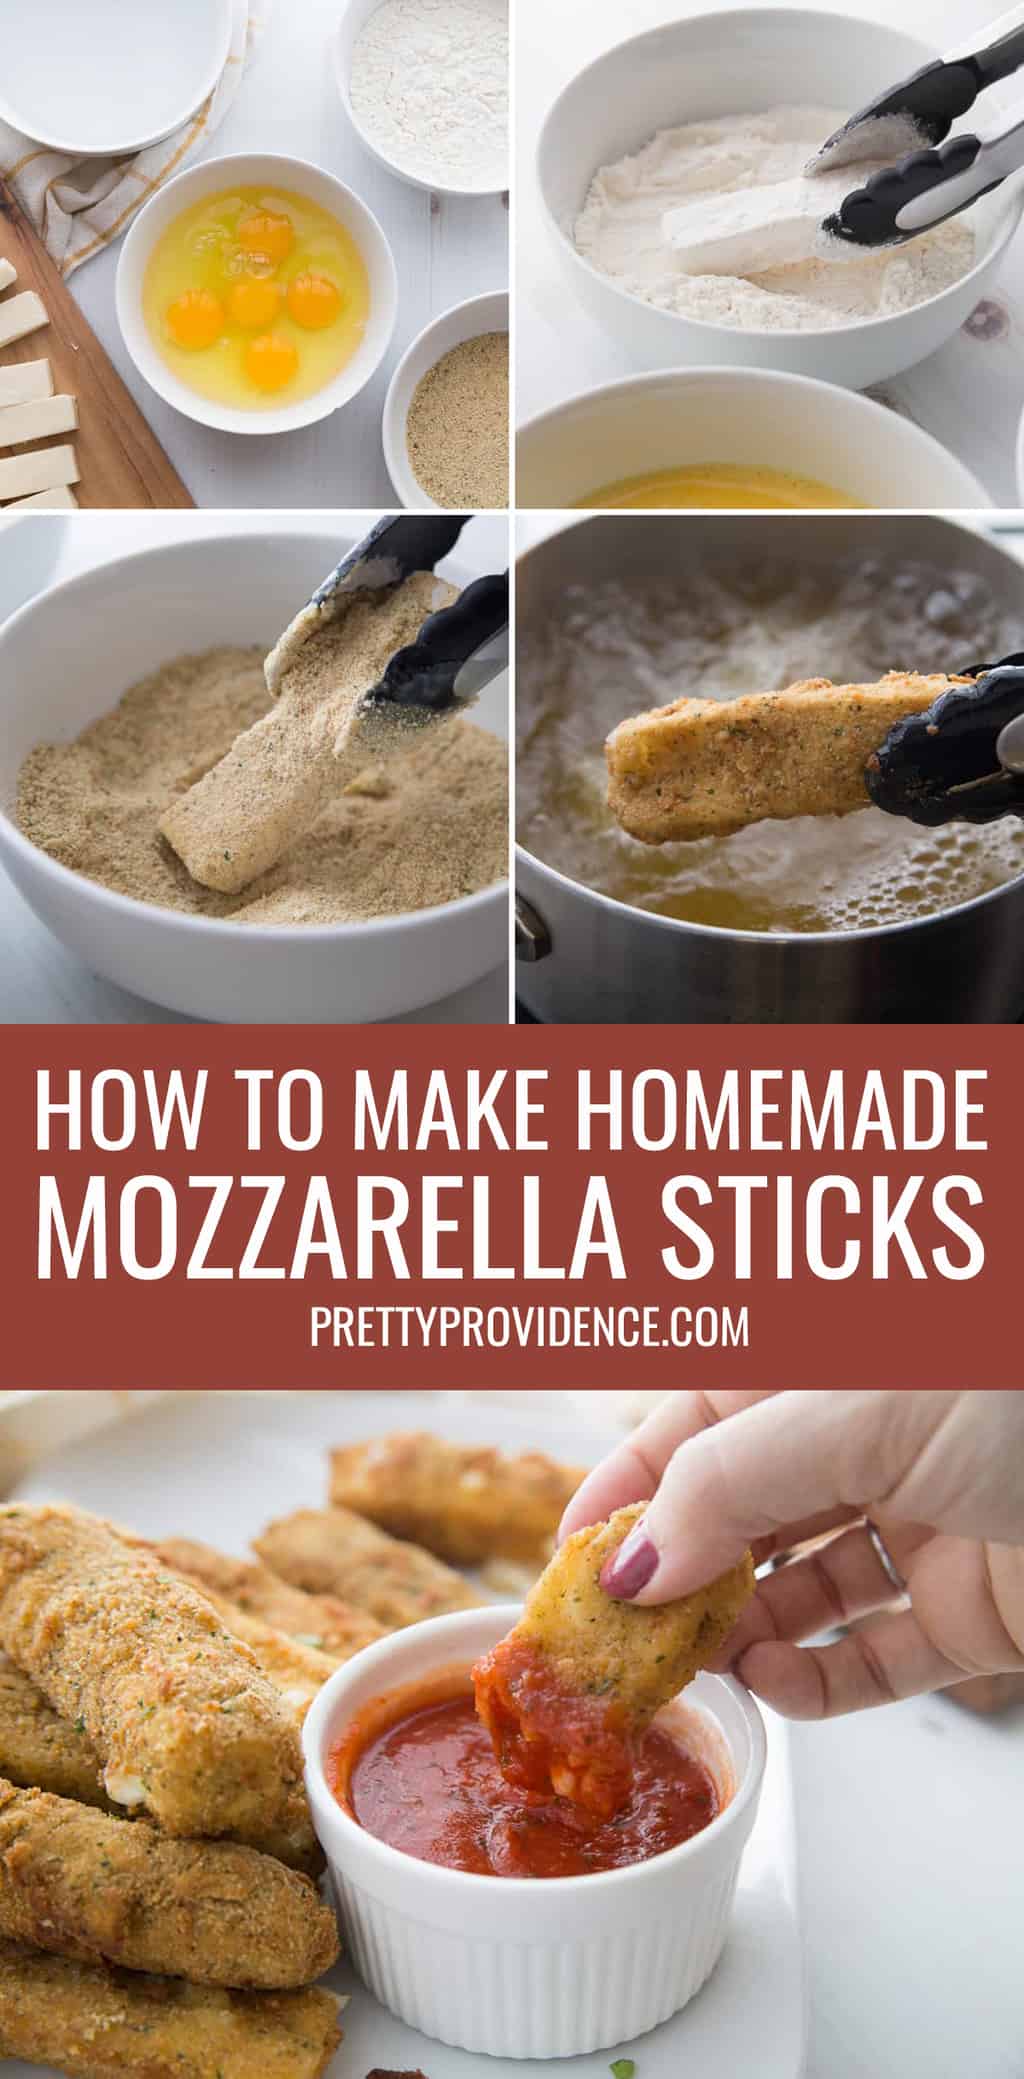 Homemade Mozzarella Sticks Recipe - Pretty Providence